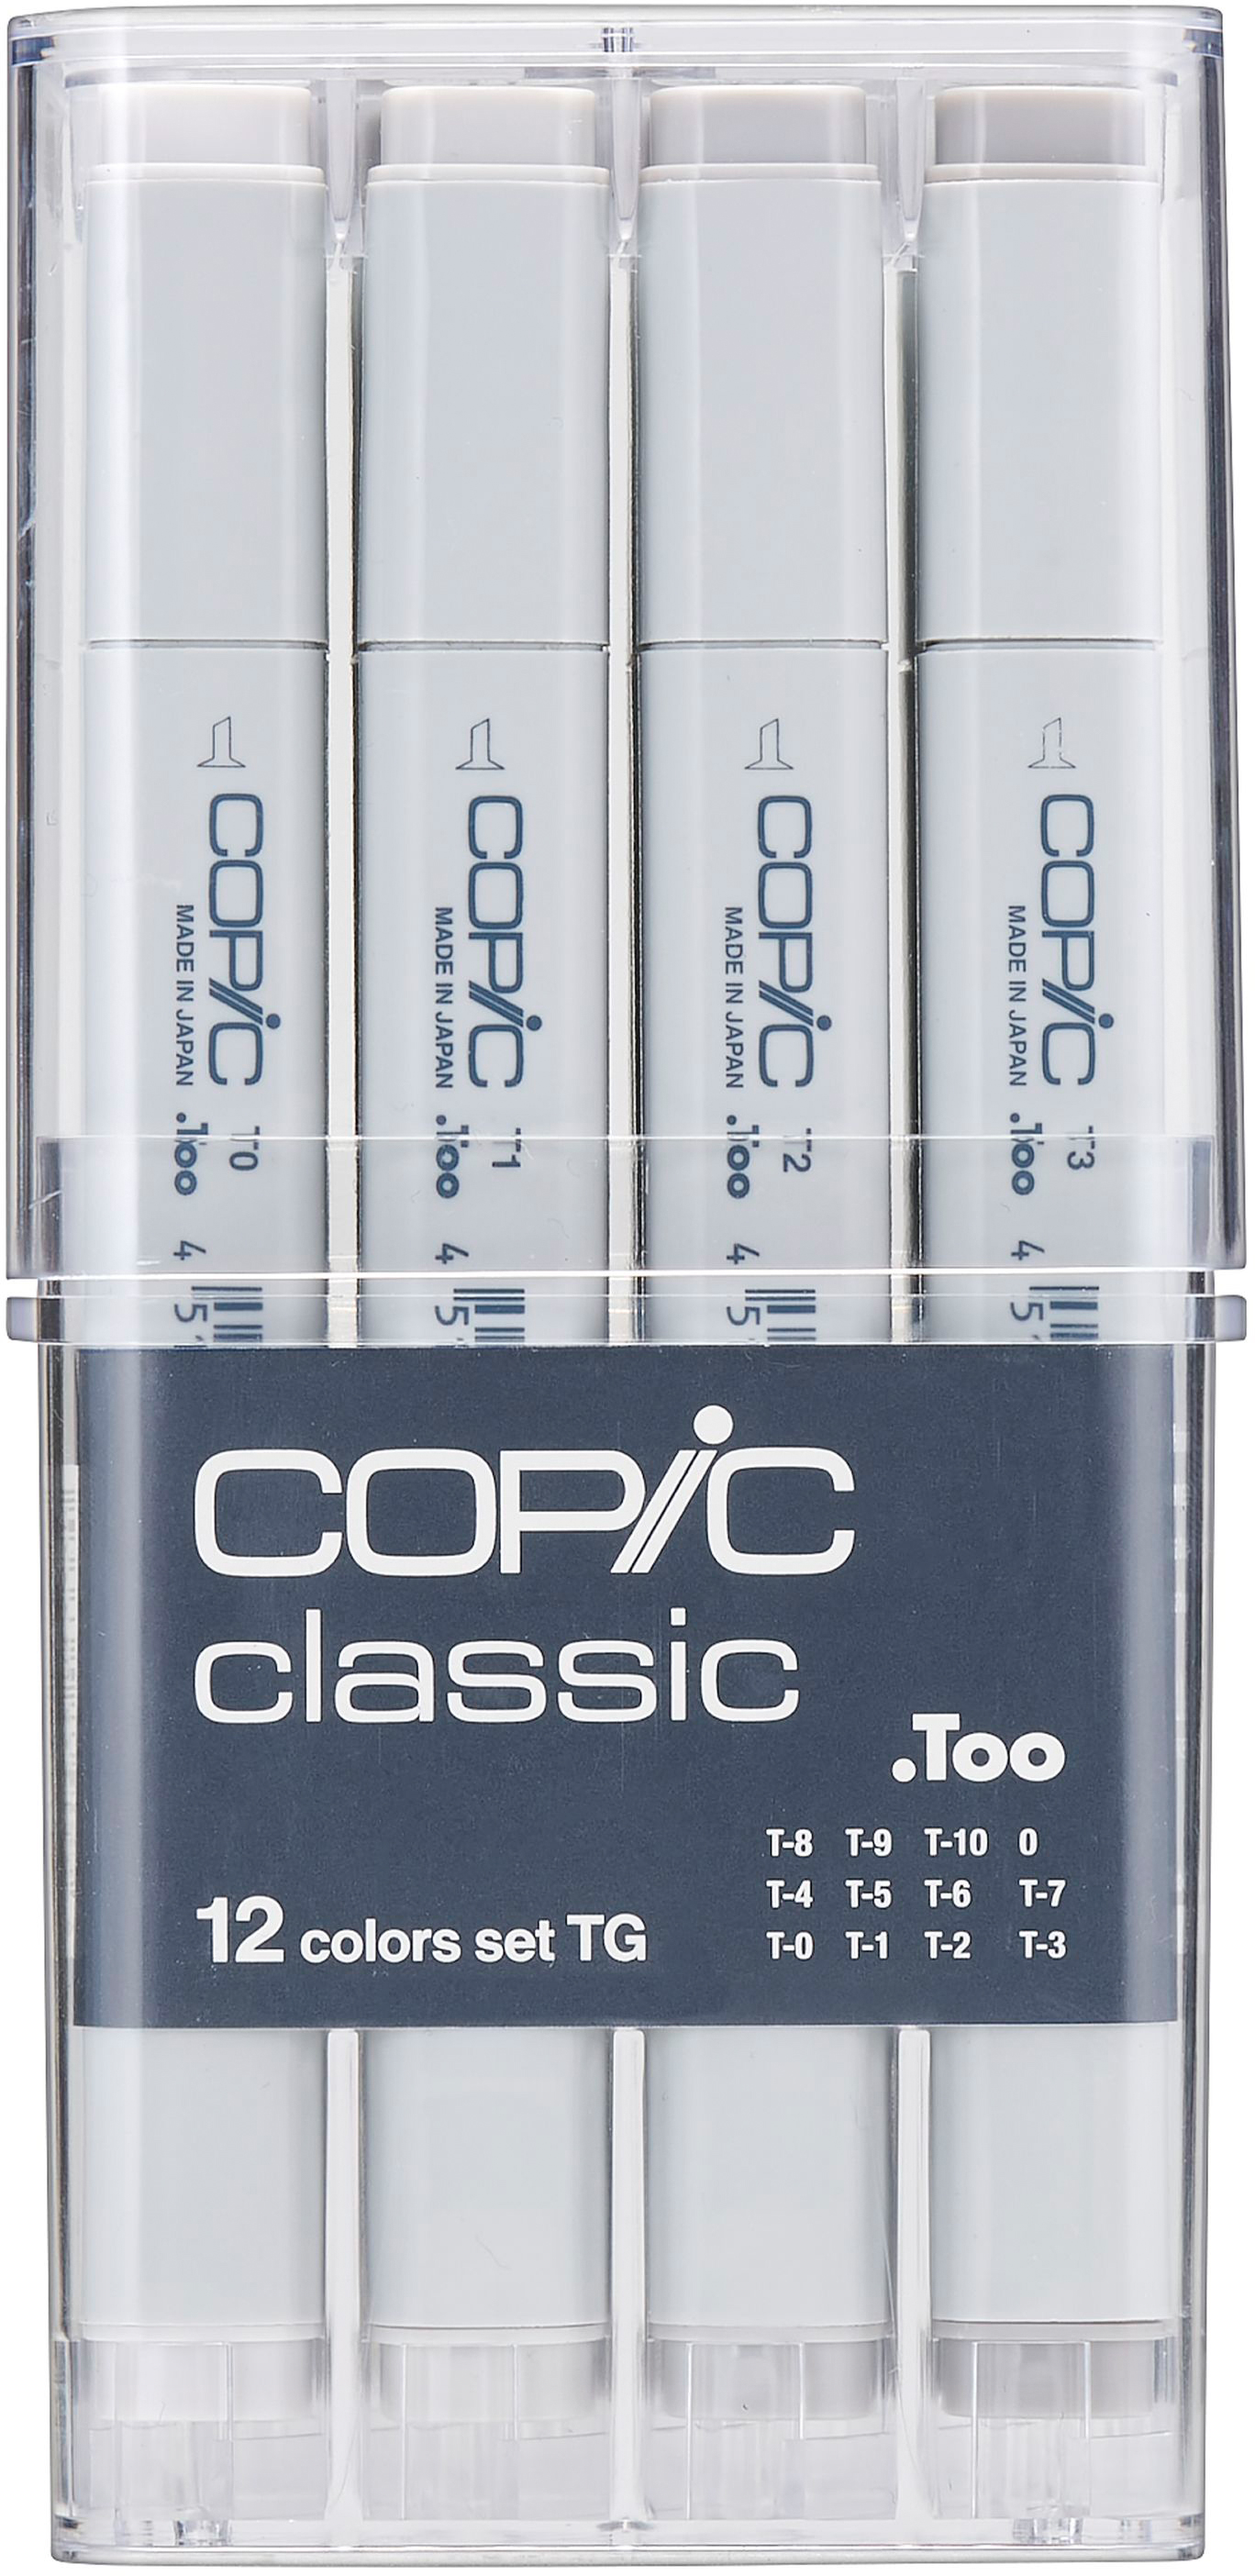 COPIC Marker Classic 20075153 grey-Set TG, 12 pcs.